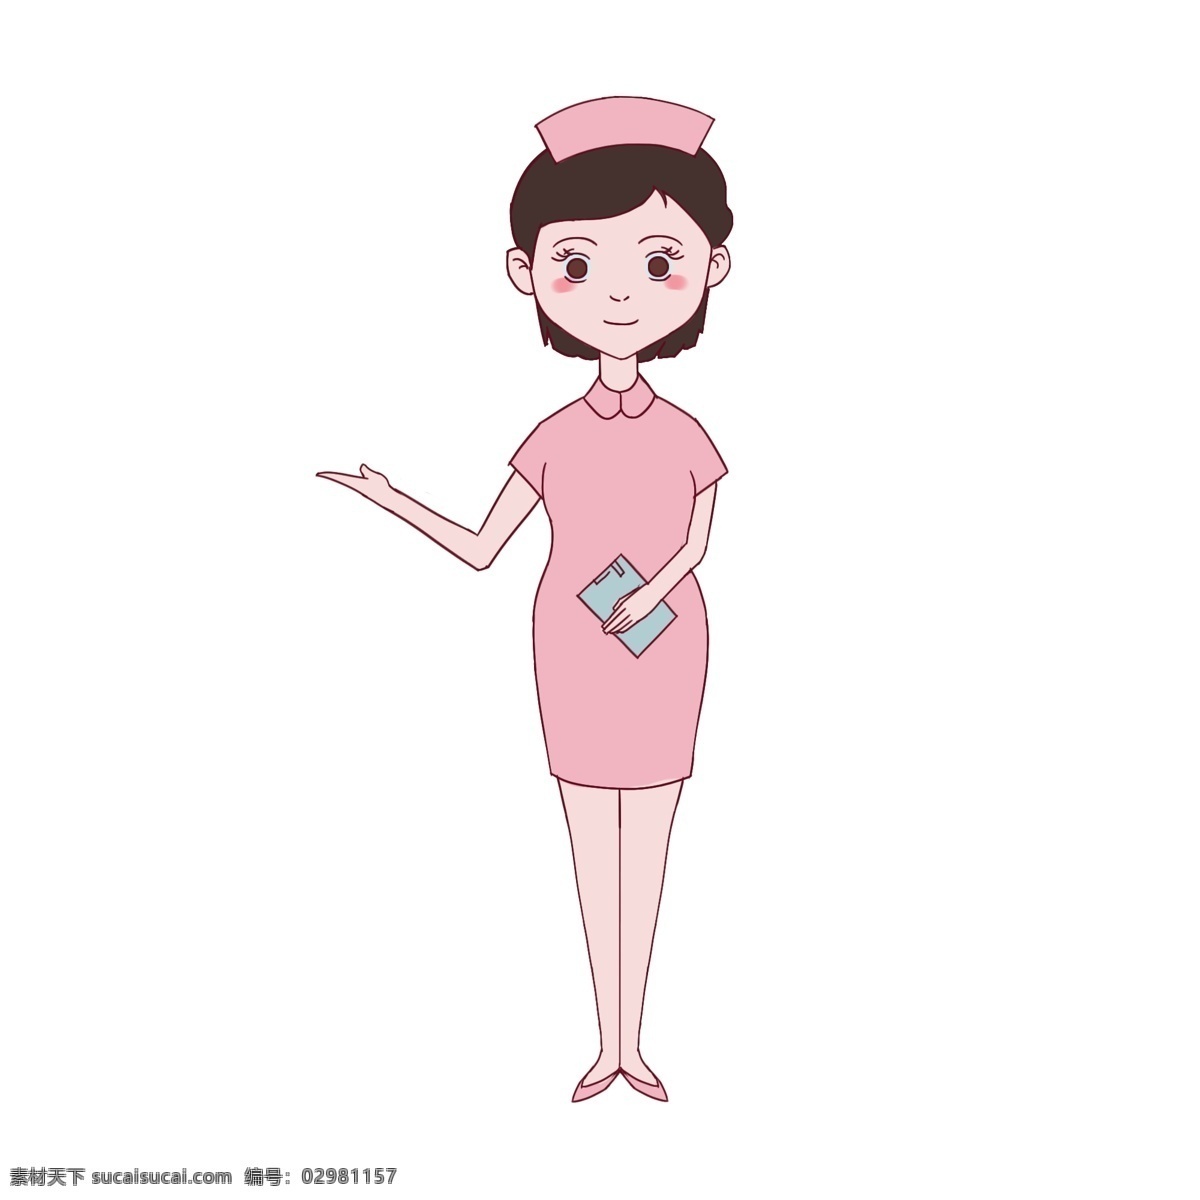 纯 手绘 医院 女 护士 护理 药品 美女护士 卡通女护士 拿单子的护士 护理须知 可爱护士角色 护理人员 穿 粉色 衣服 女制服护士